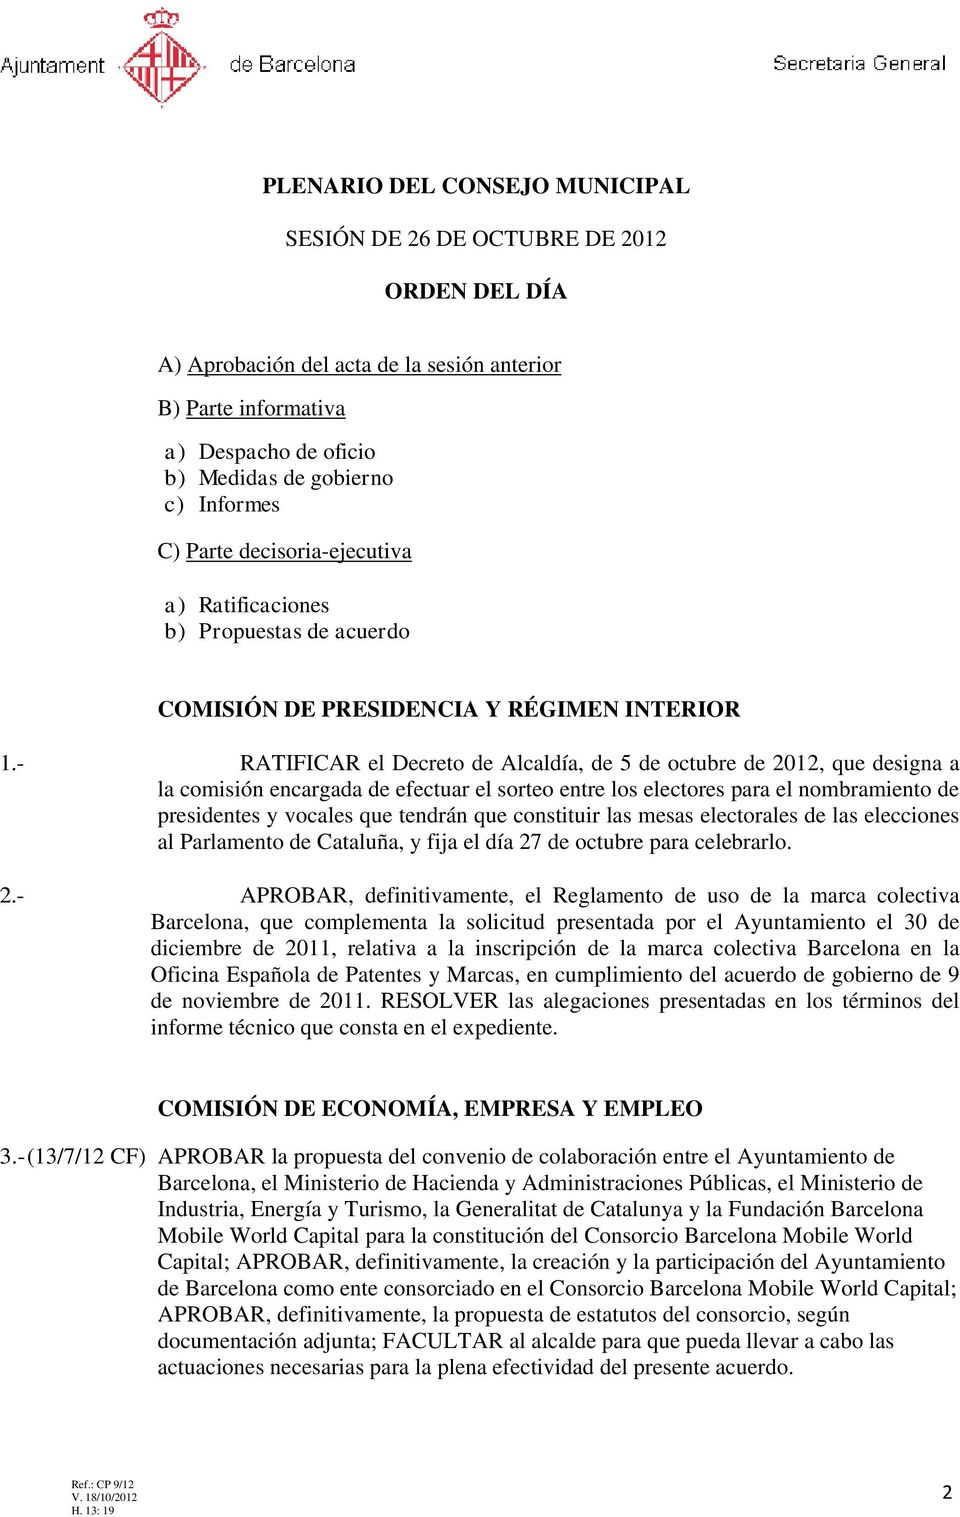 - RATIFICAR el Decreto de Alcaldía, de 5 de octubre de 2012, que designa a la comisión encargada de efectuar el sorteo entre los electores para el nombramiento de presidentes y vocales que tendrán